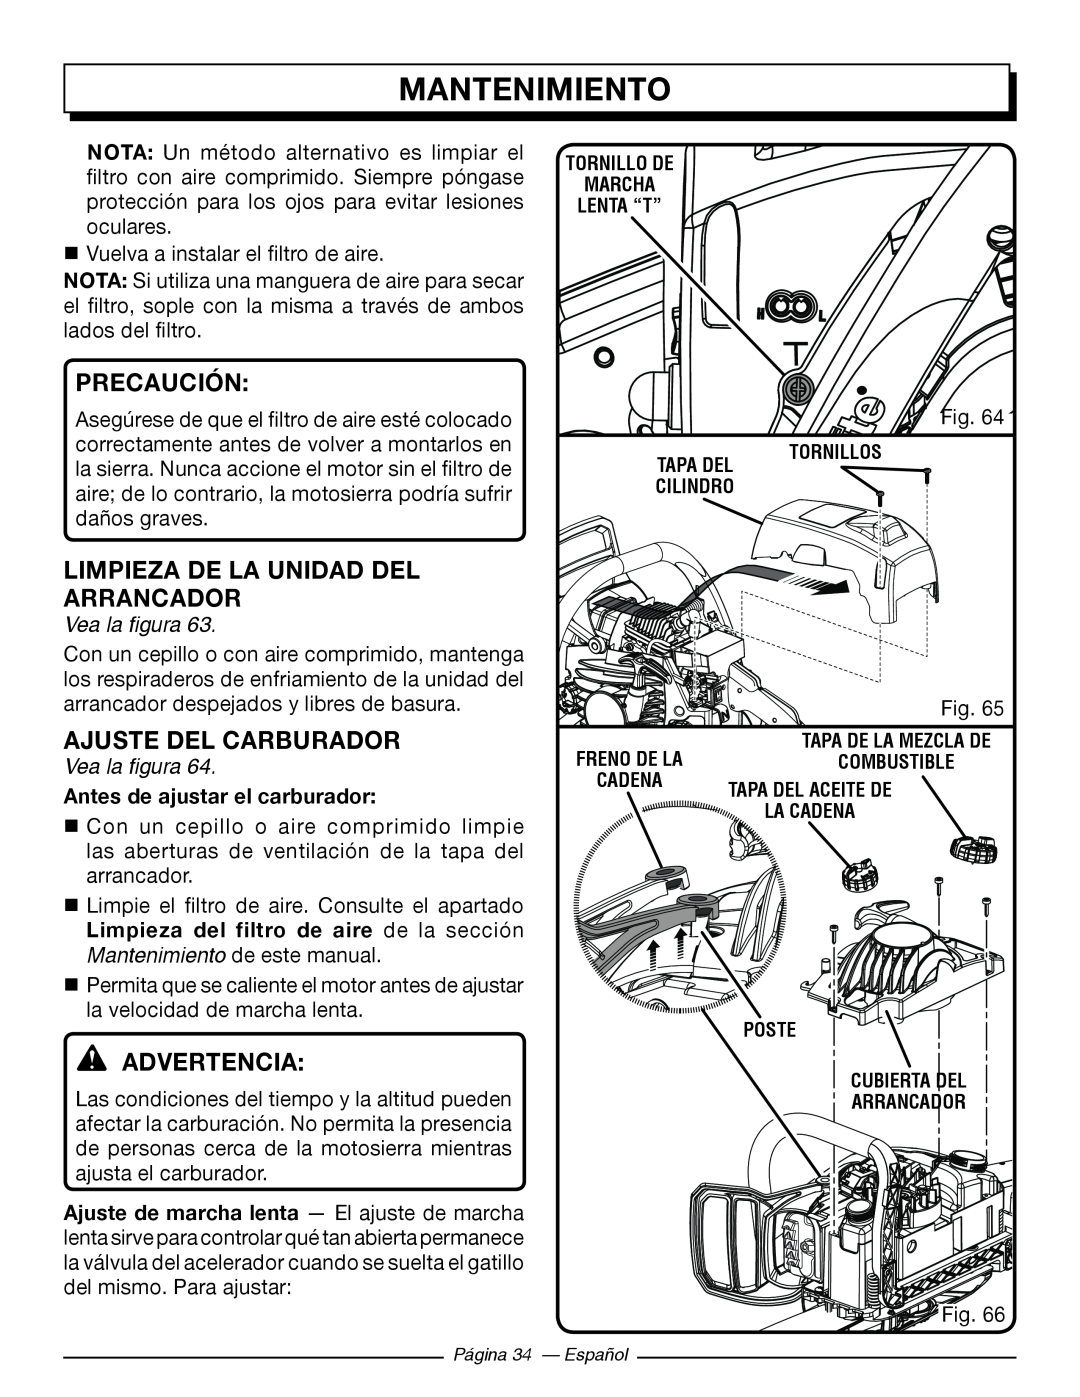 Homelite UT10546 Limpieza De La Unidad Del Arrancador, Ajuste Del Carburador, Antes de ajustar el carburador, Precaución 